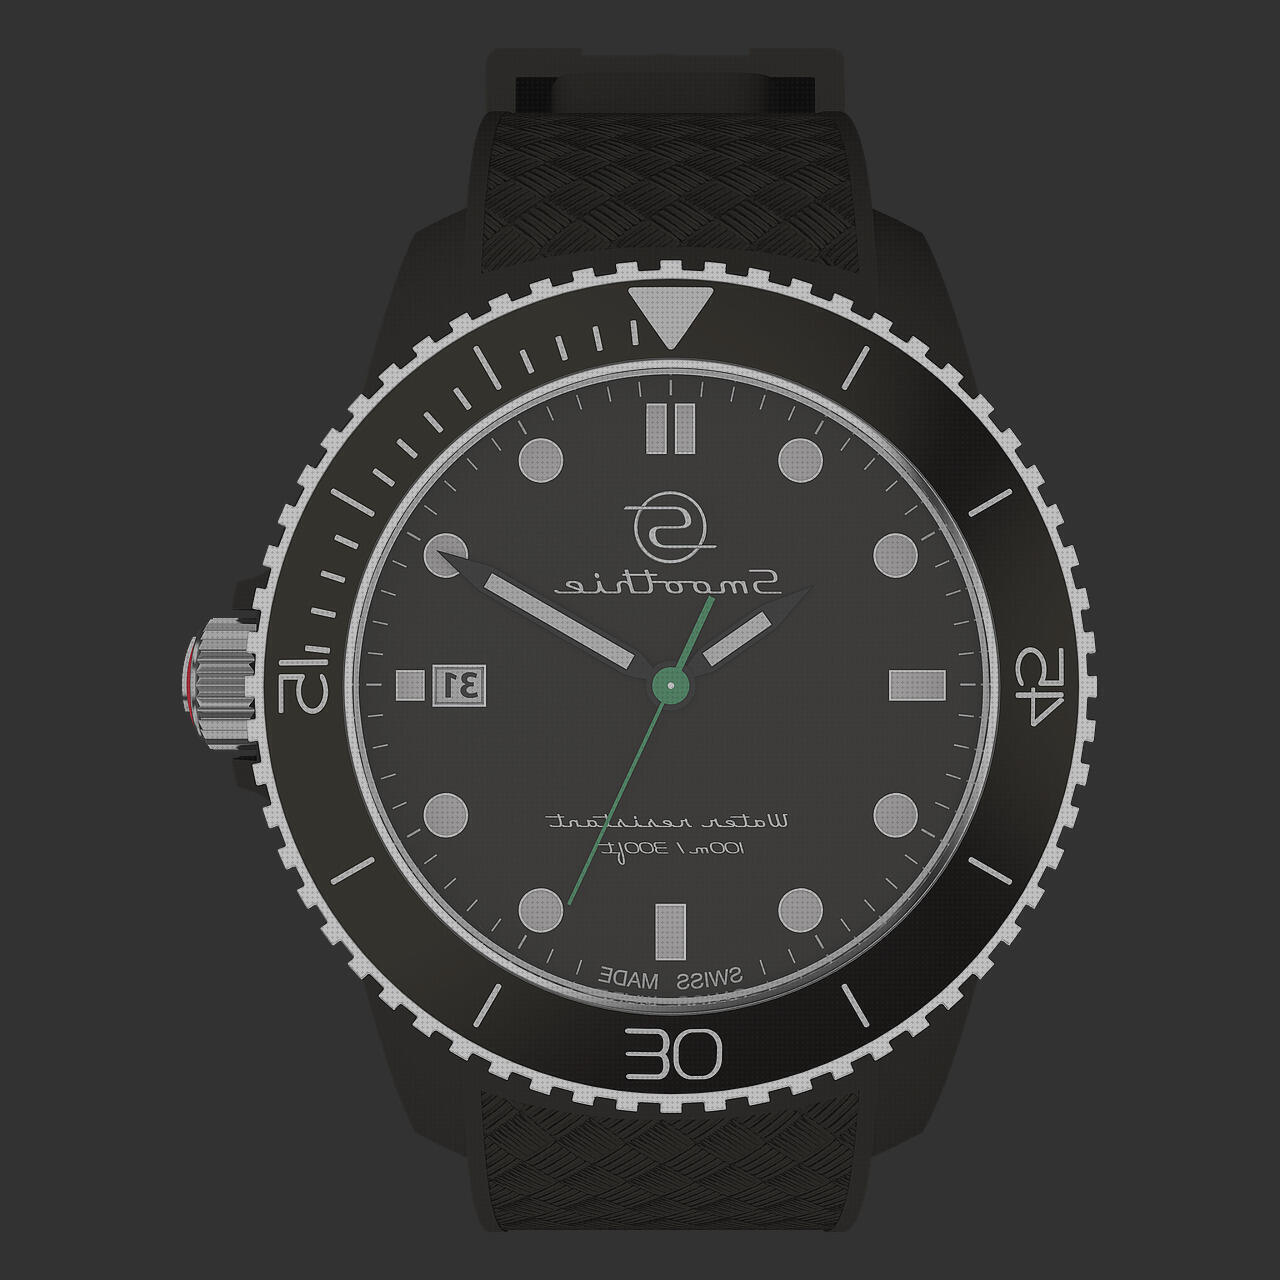 Las mejores marcas de relojes baratos online relojes baratos relojes relojes swatch baratos online